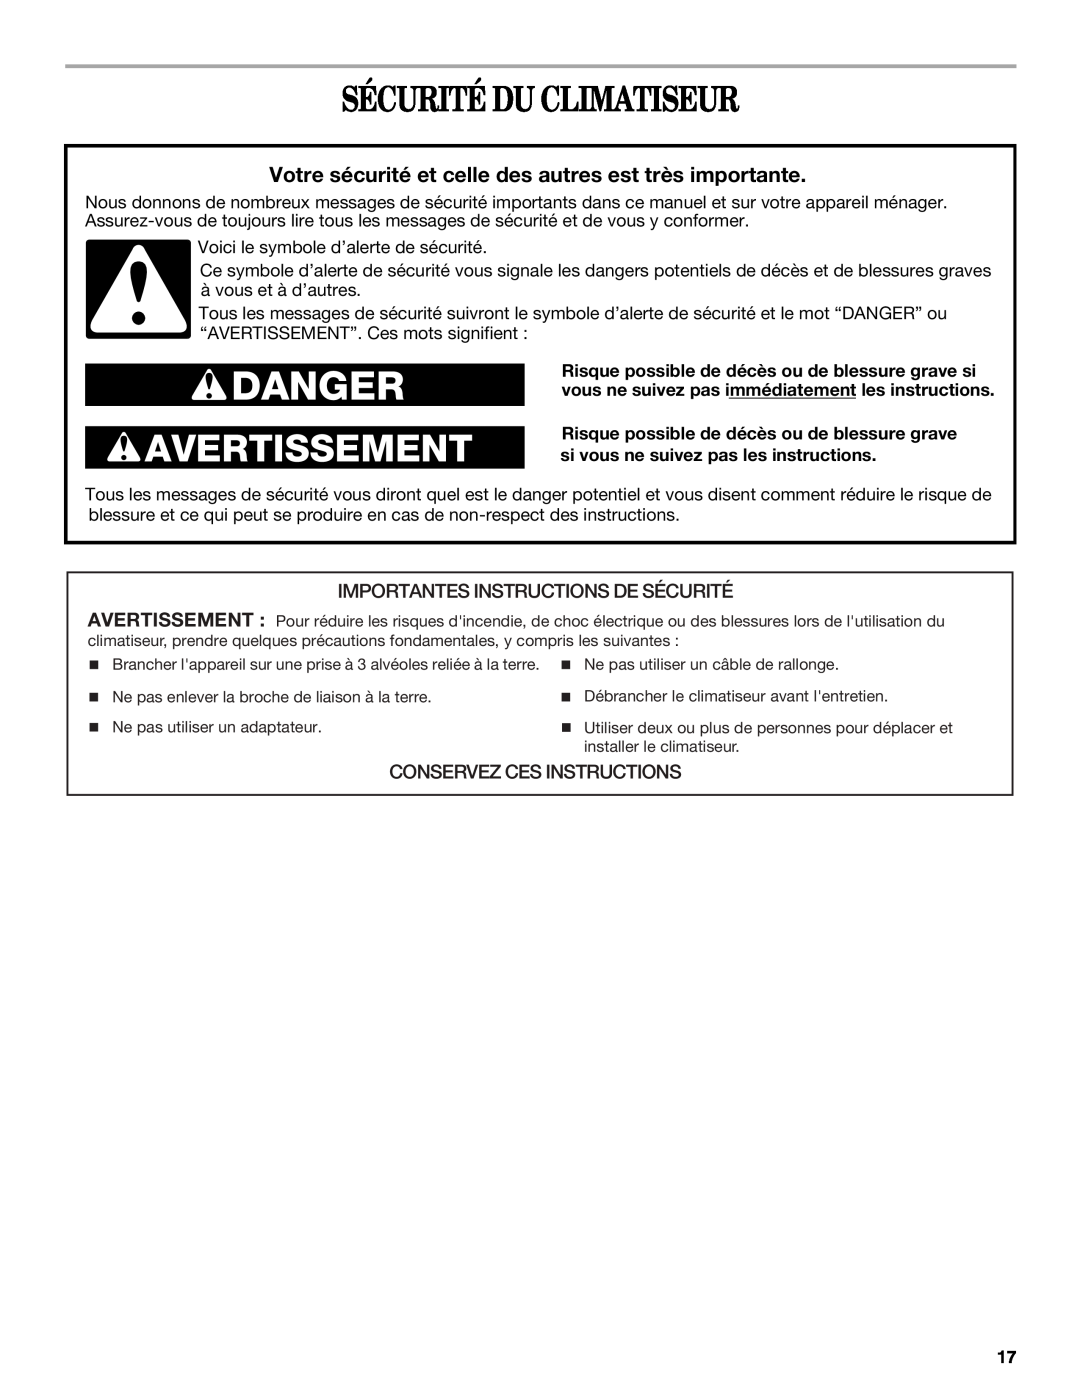 Whirlpool 819041994 Sécurité Du Climatiseur, Importantes Instructions De Sécurité, Conservez Ces Instructions, Danger 